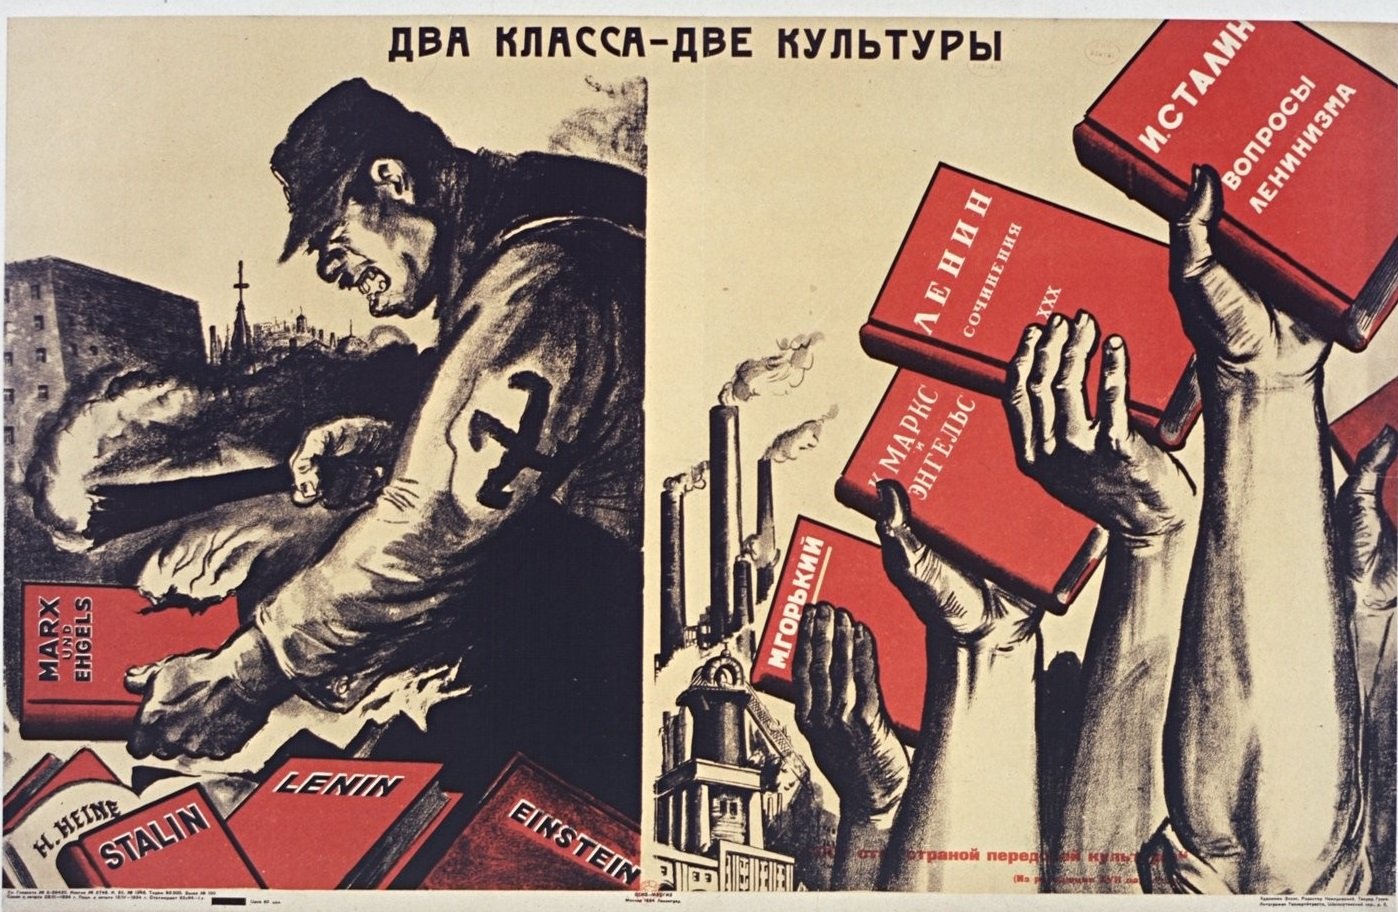 Государственная агитация. Советские агитационные плакаты. Советские политические плакаты. Советские революционные плакаты. Советский плакат 20-30-х годов.